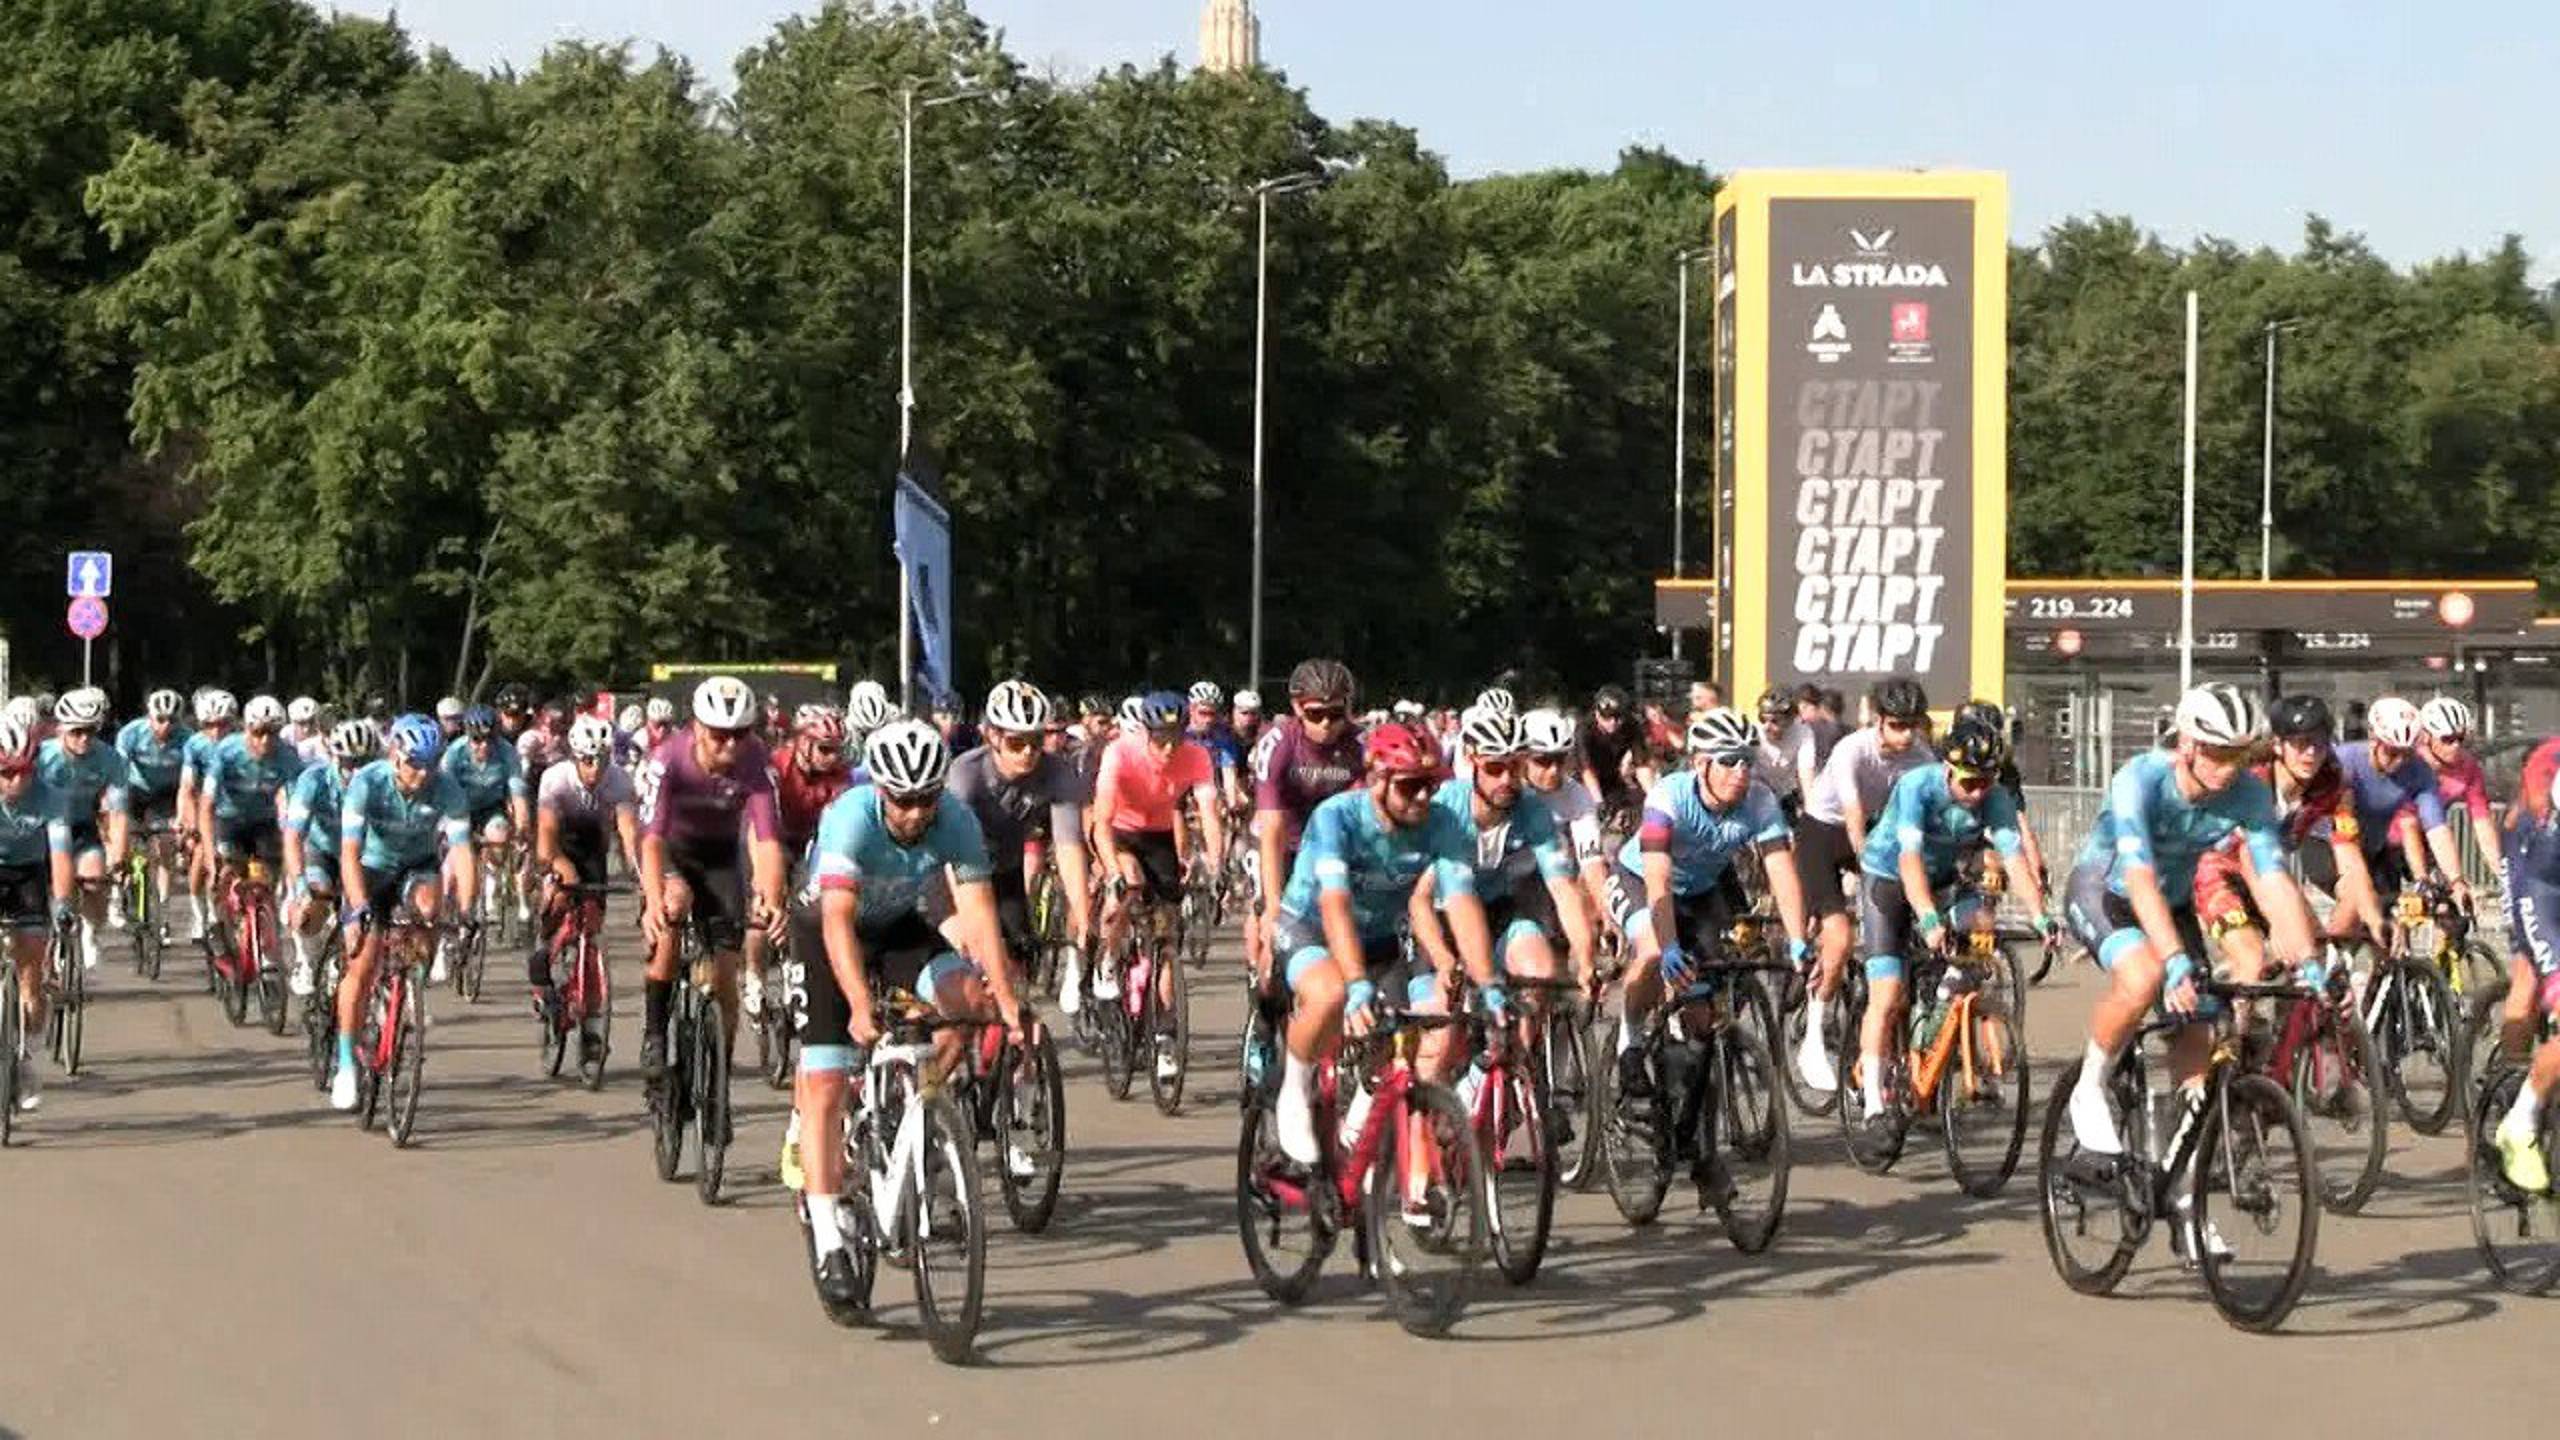 Около 5000 участников: в Москве состоялась велогонка La Strada